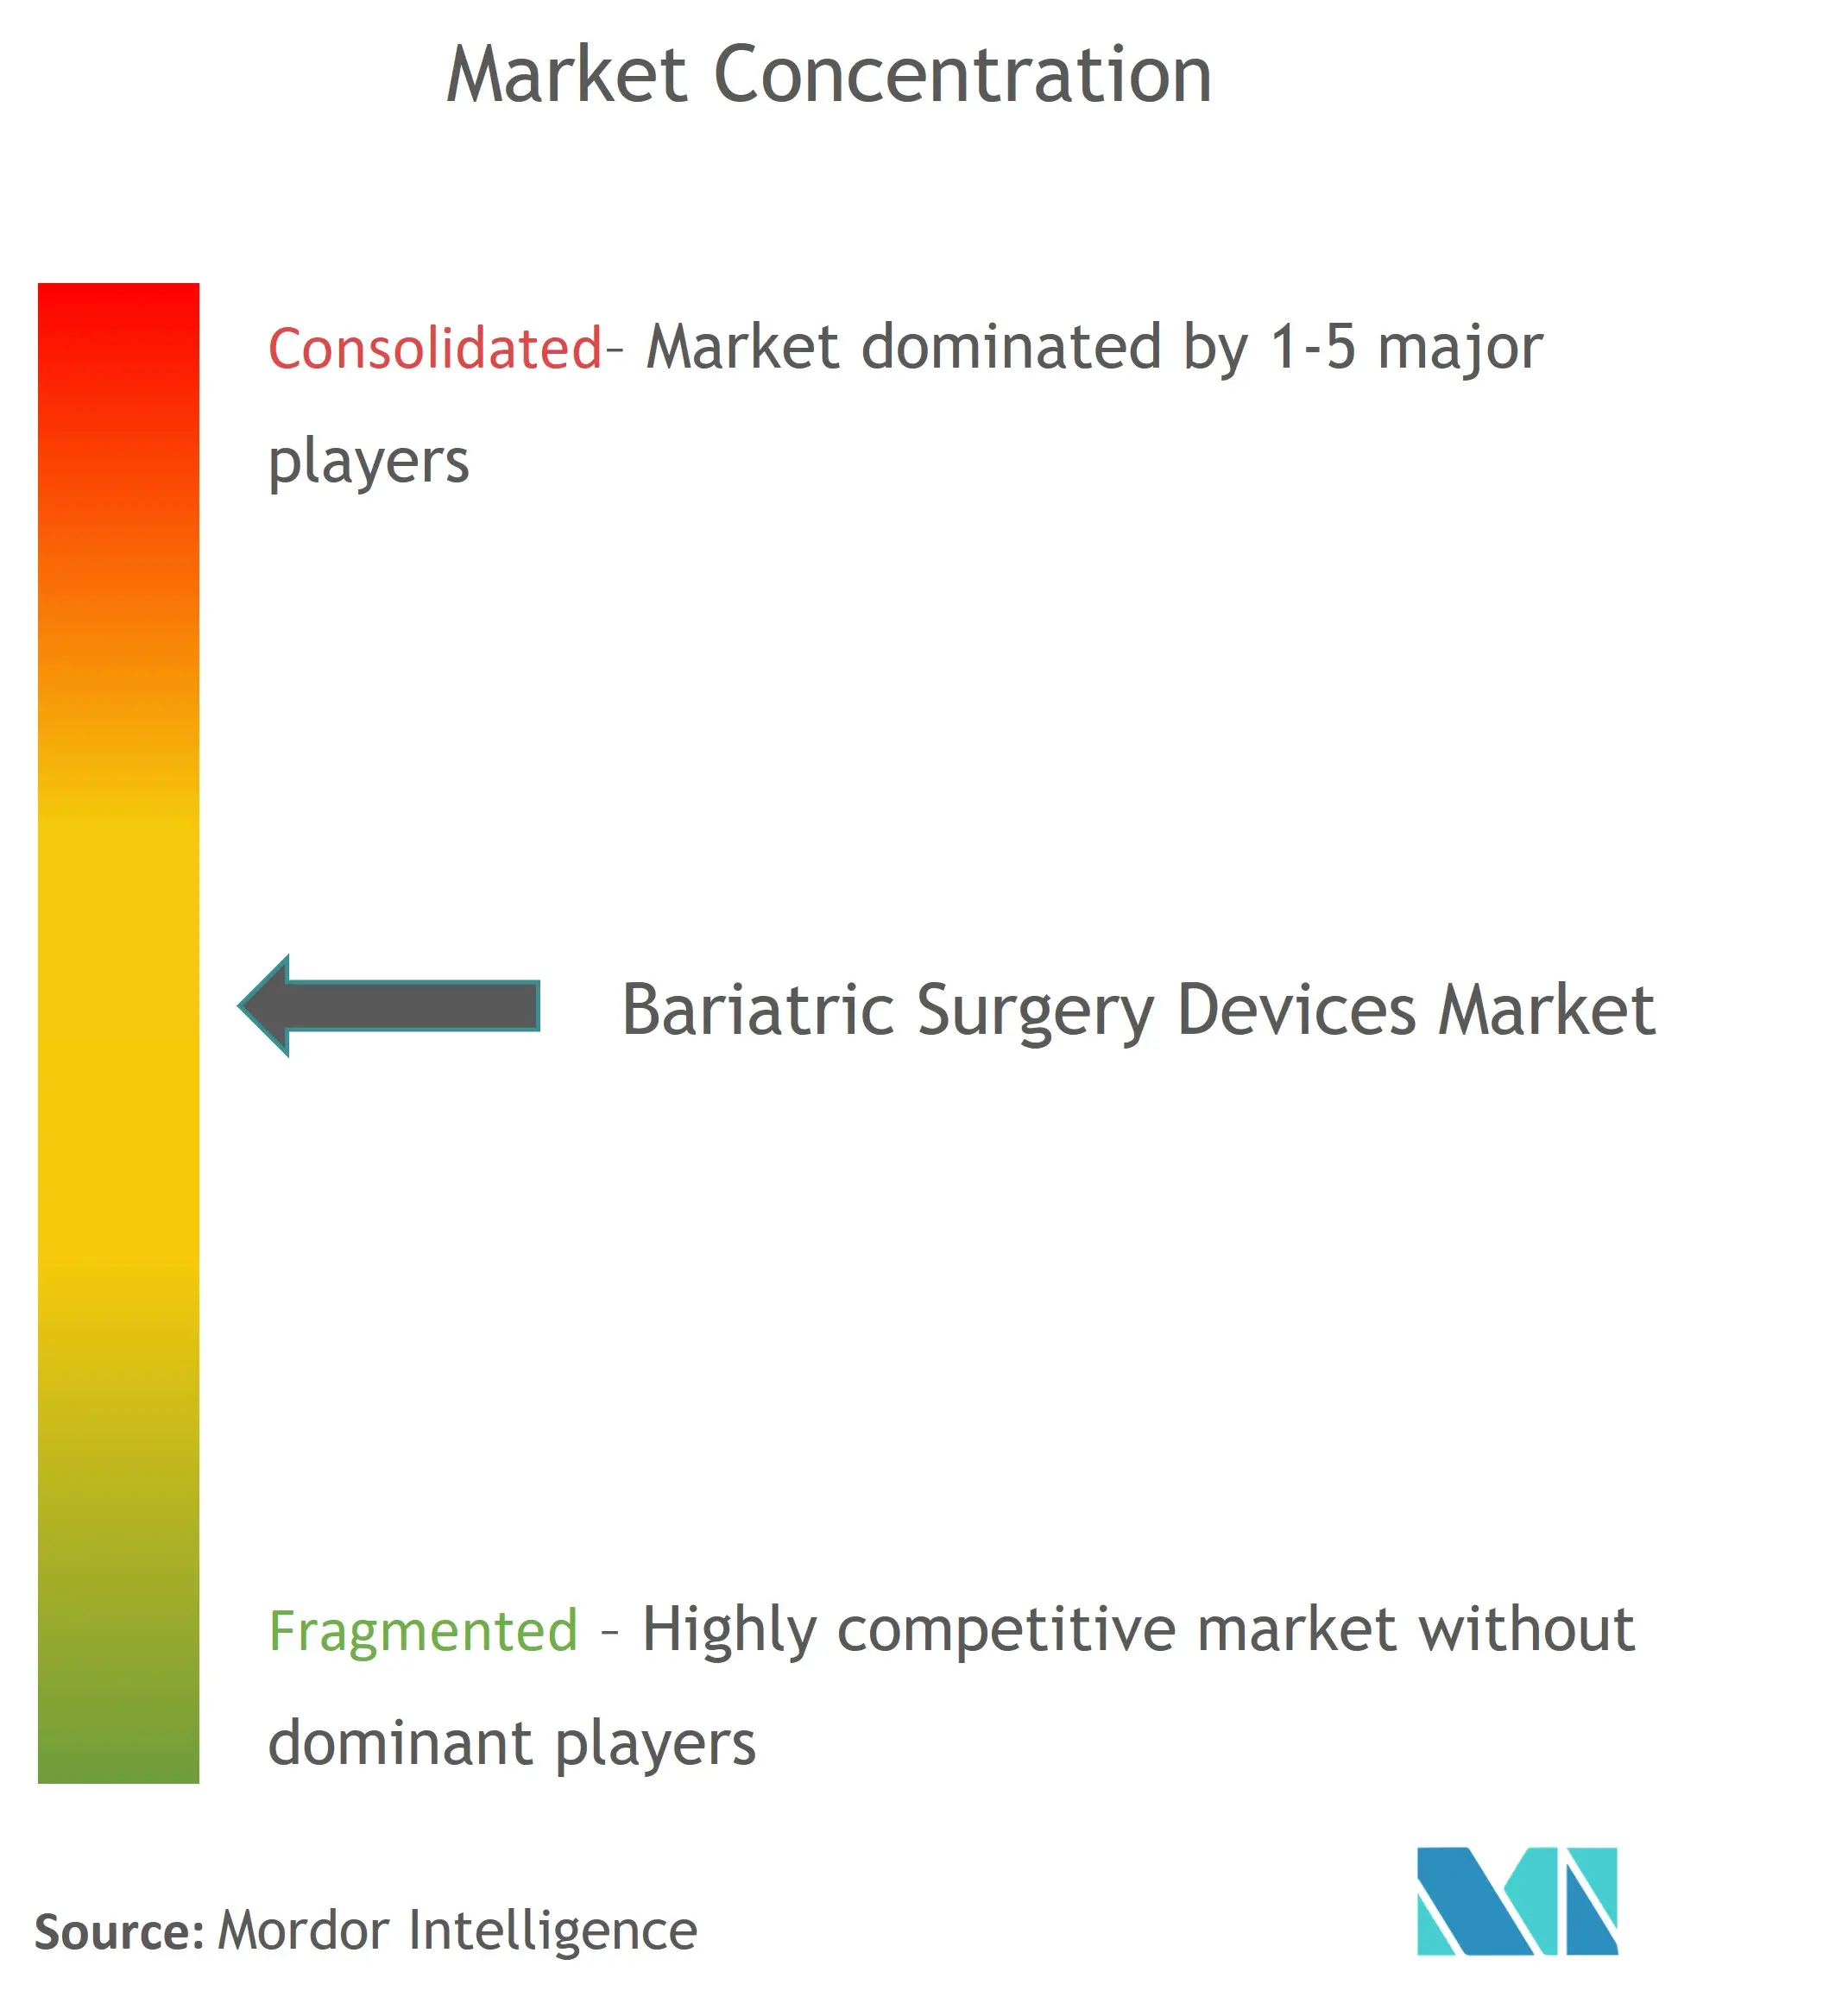 肥満手術用器具市場集中度